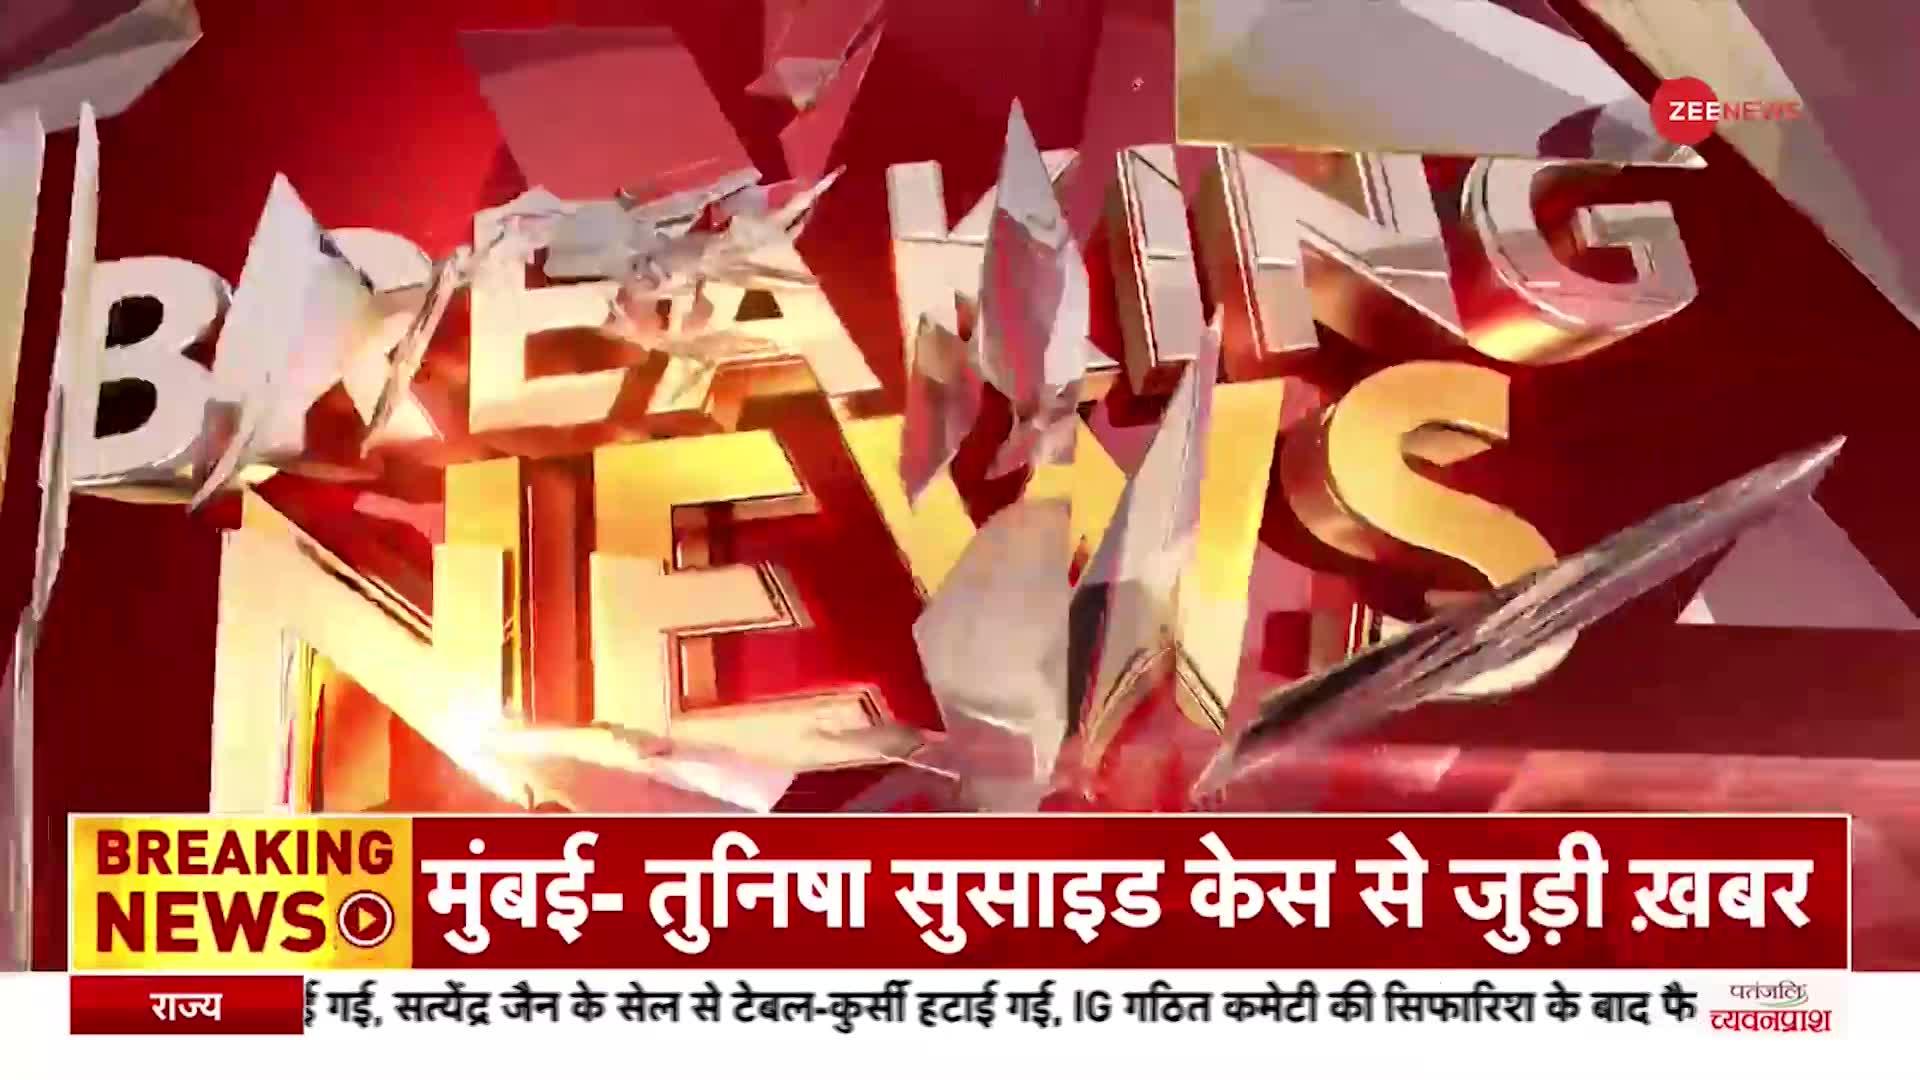 Breaking News: दिल्ली के IGI Airport पर सोना लूटकर भागे दो पुलिसवाले